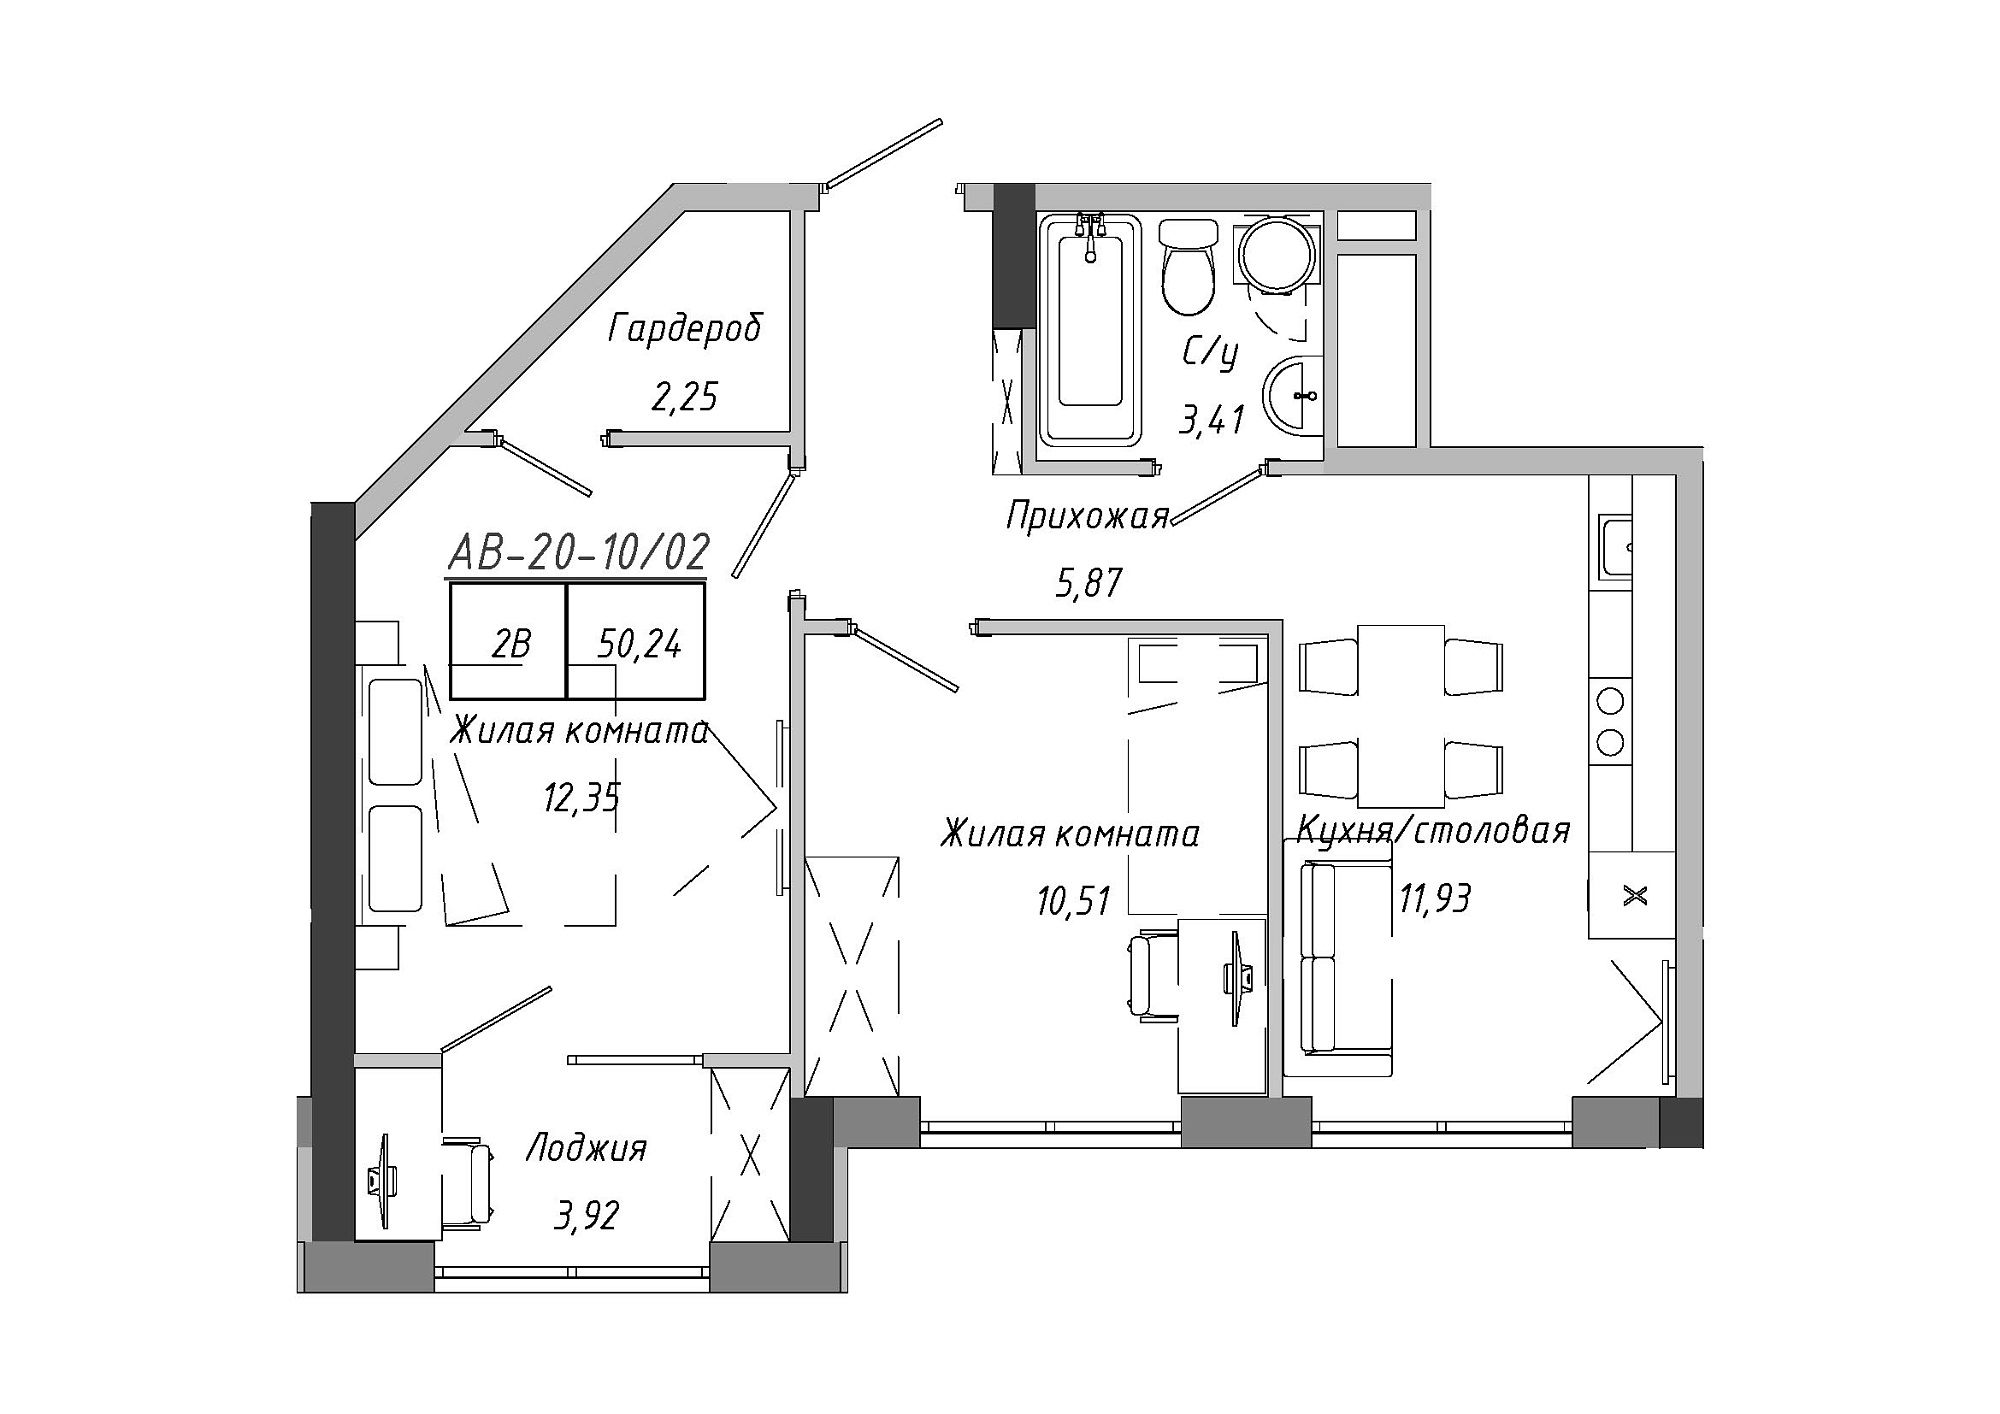 Планування 2-к квартира площею 50.33м2, AB-20-10/00002.